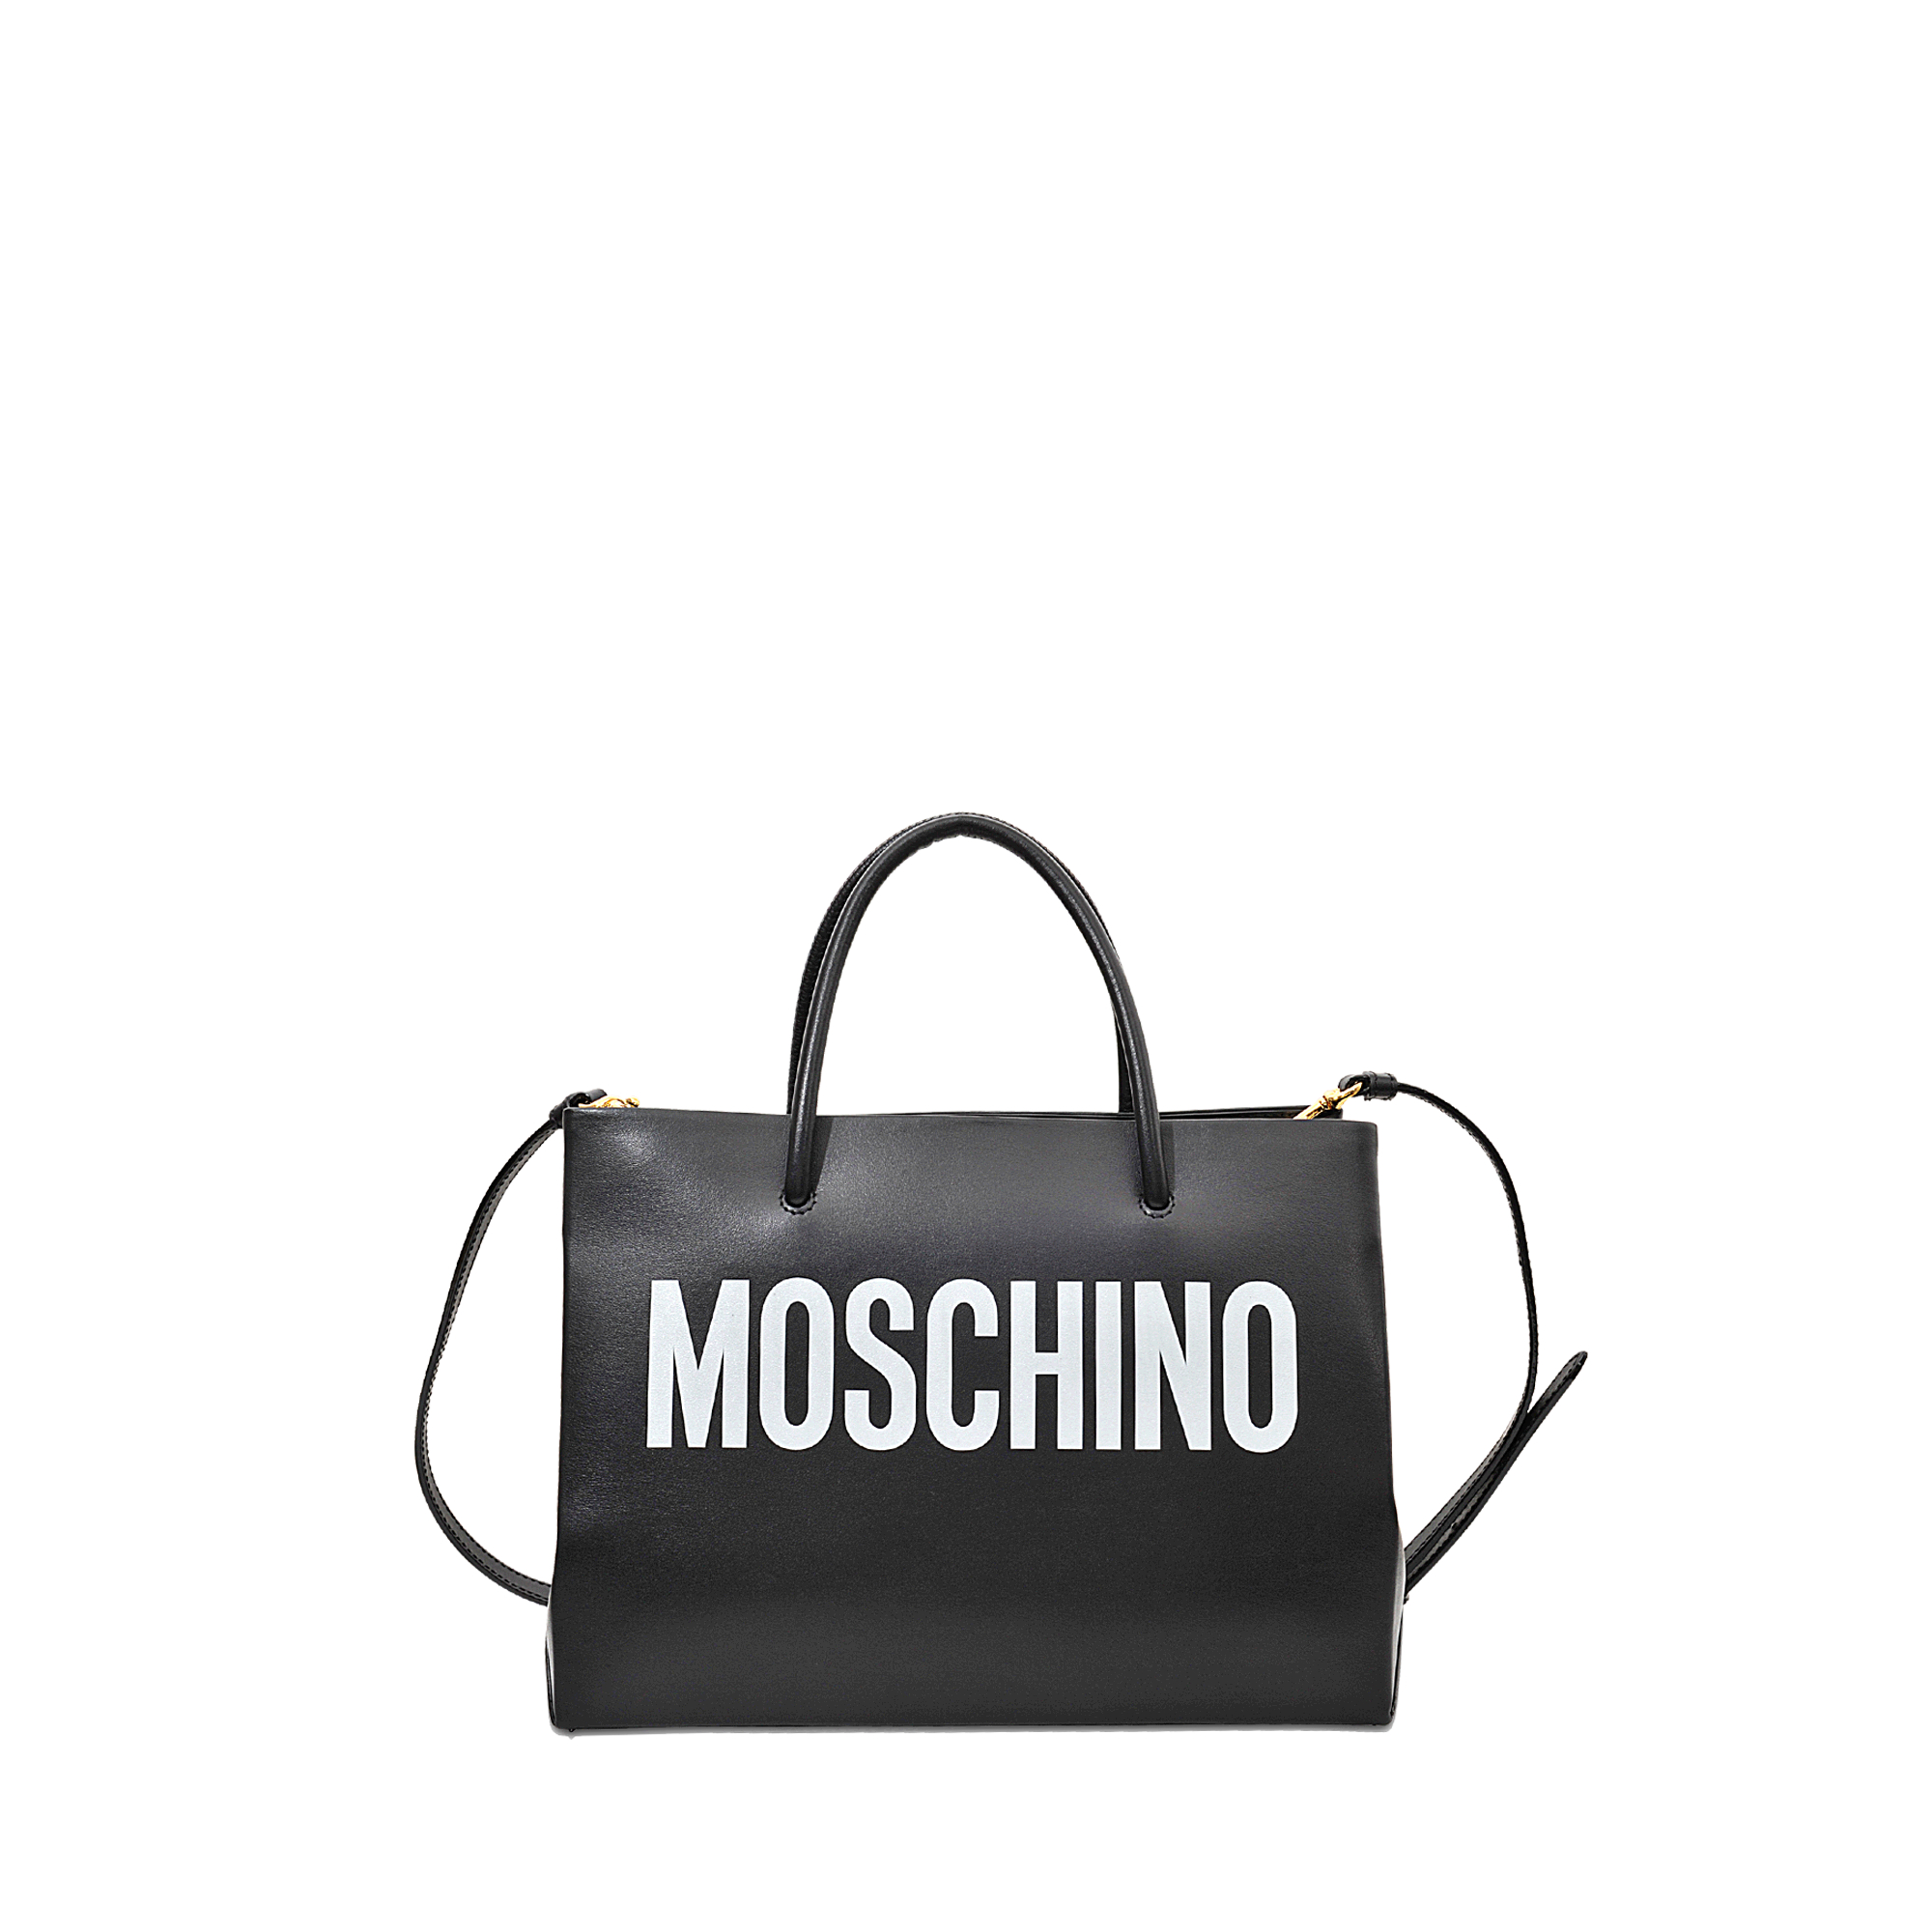 moschino shopping bag